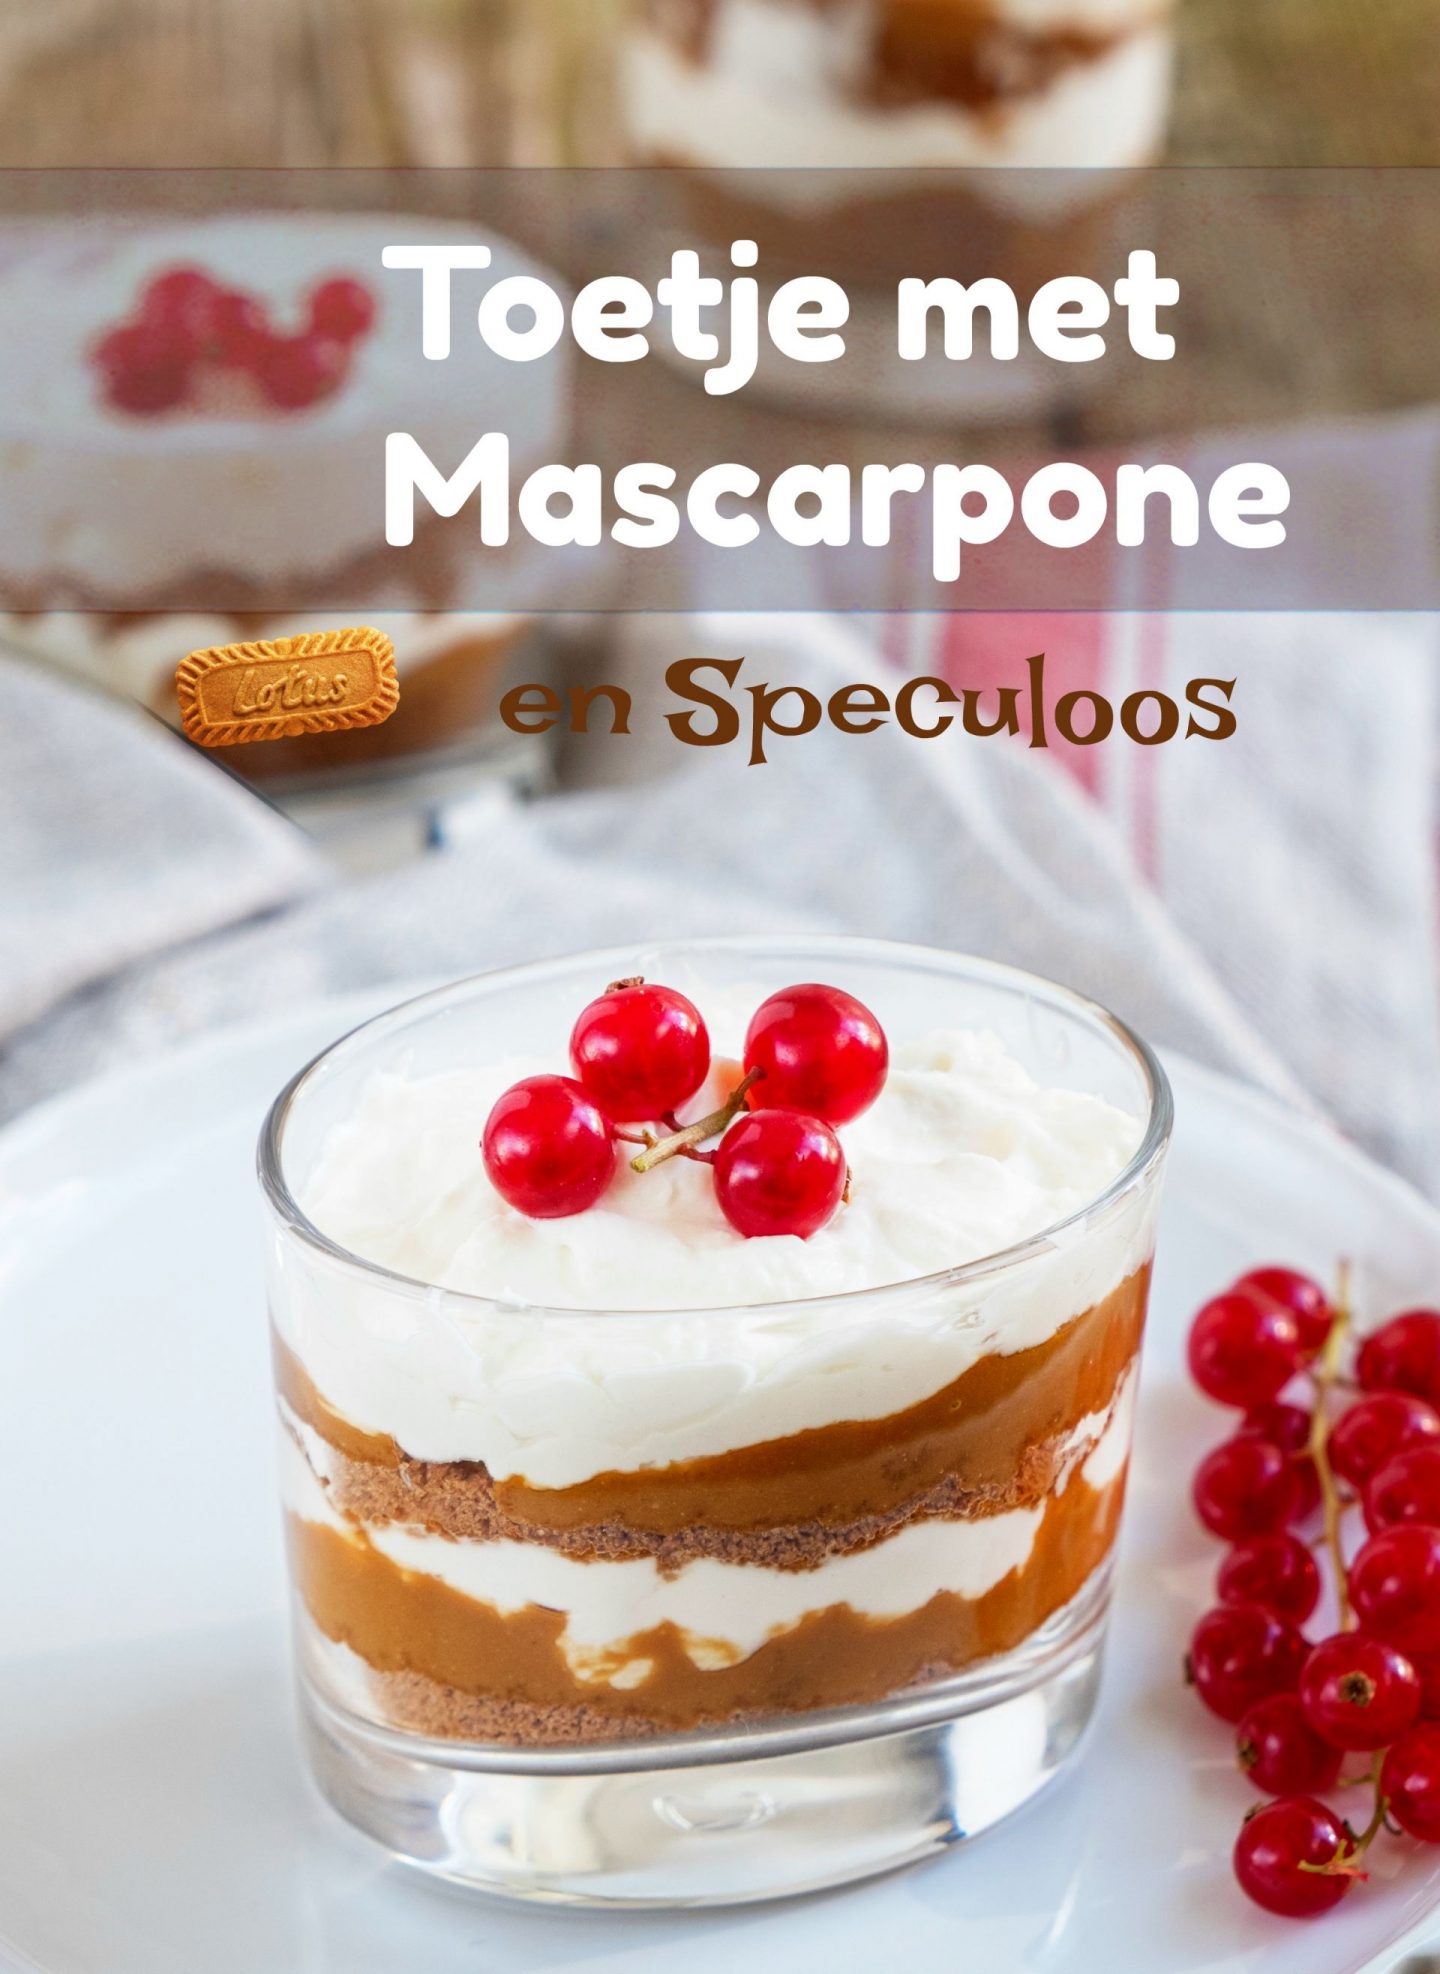 Pin: Toetje met Mascarpone en Speculoos - Dessert